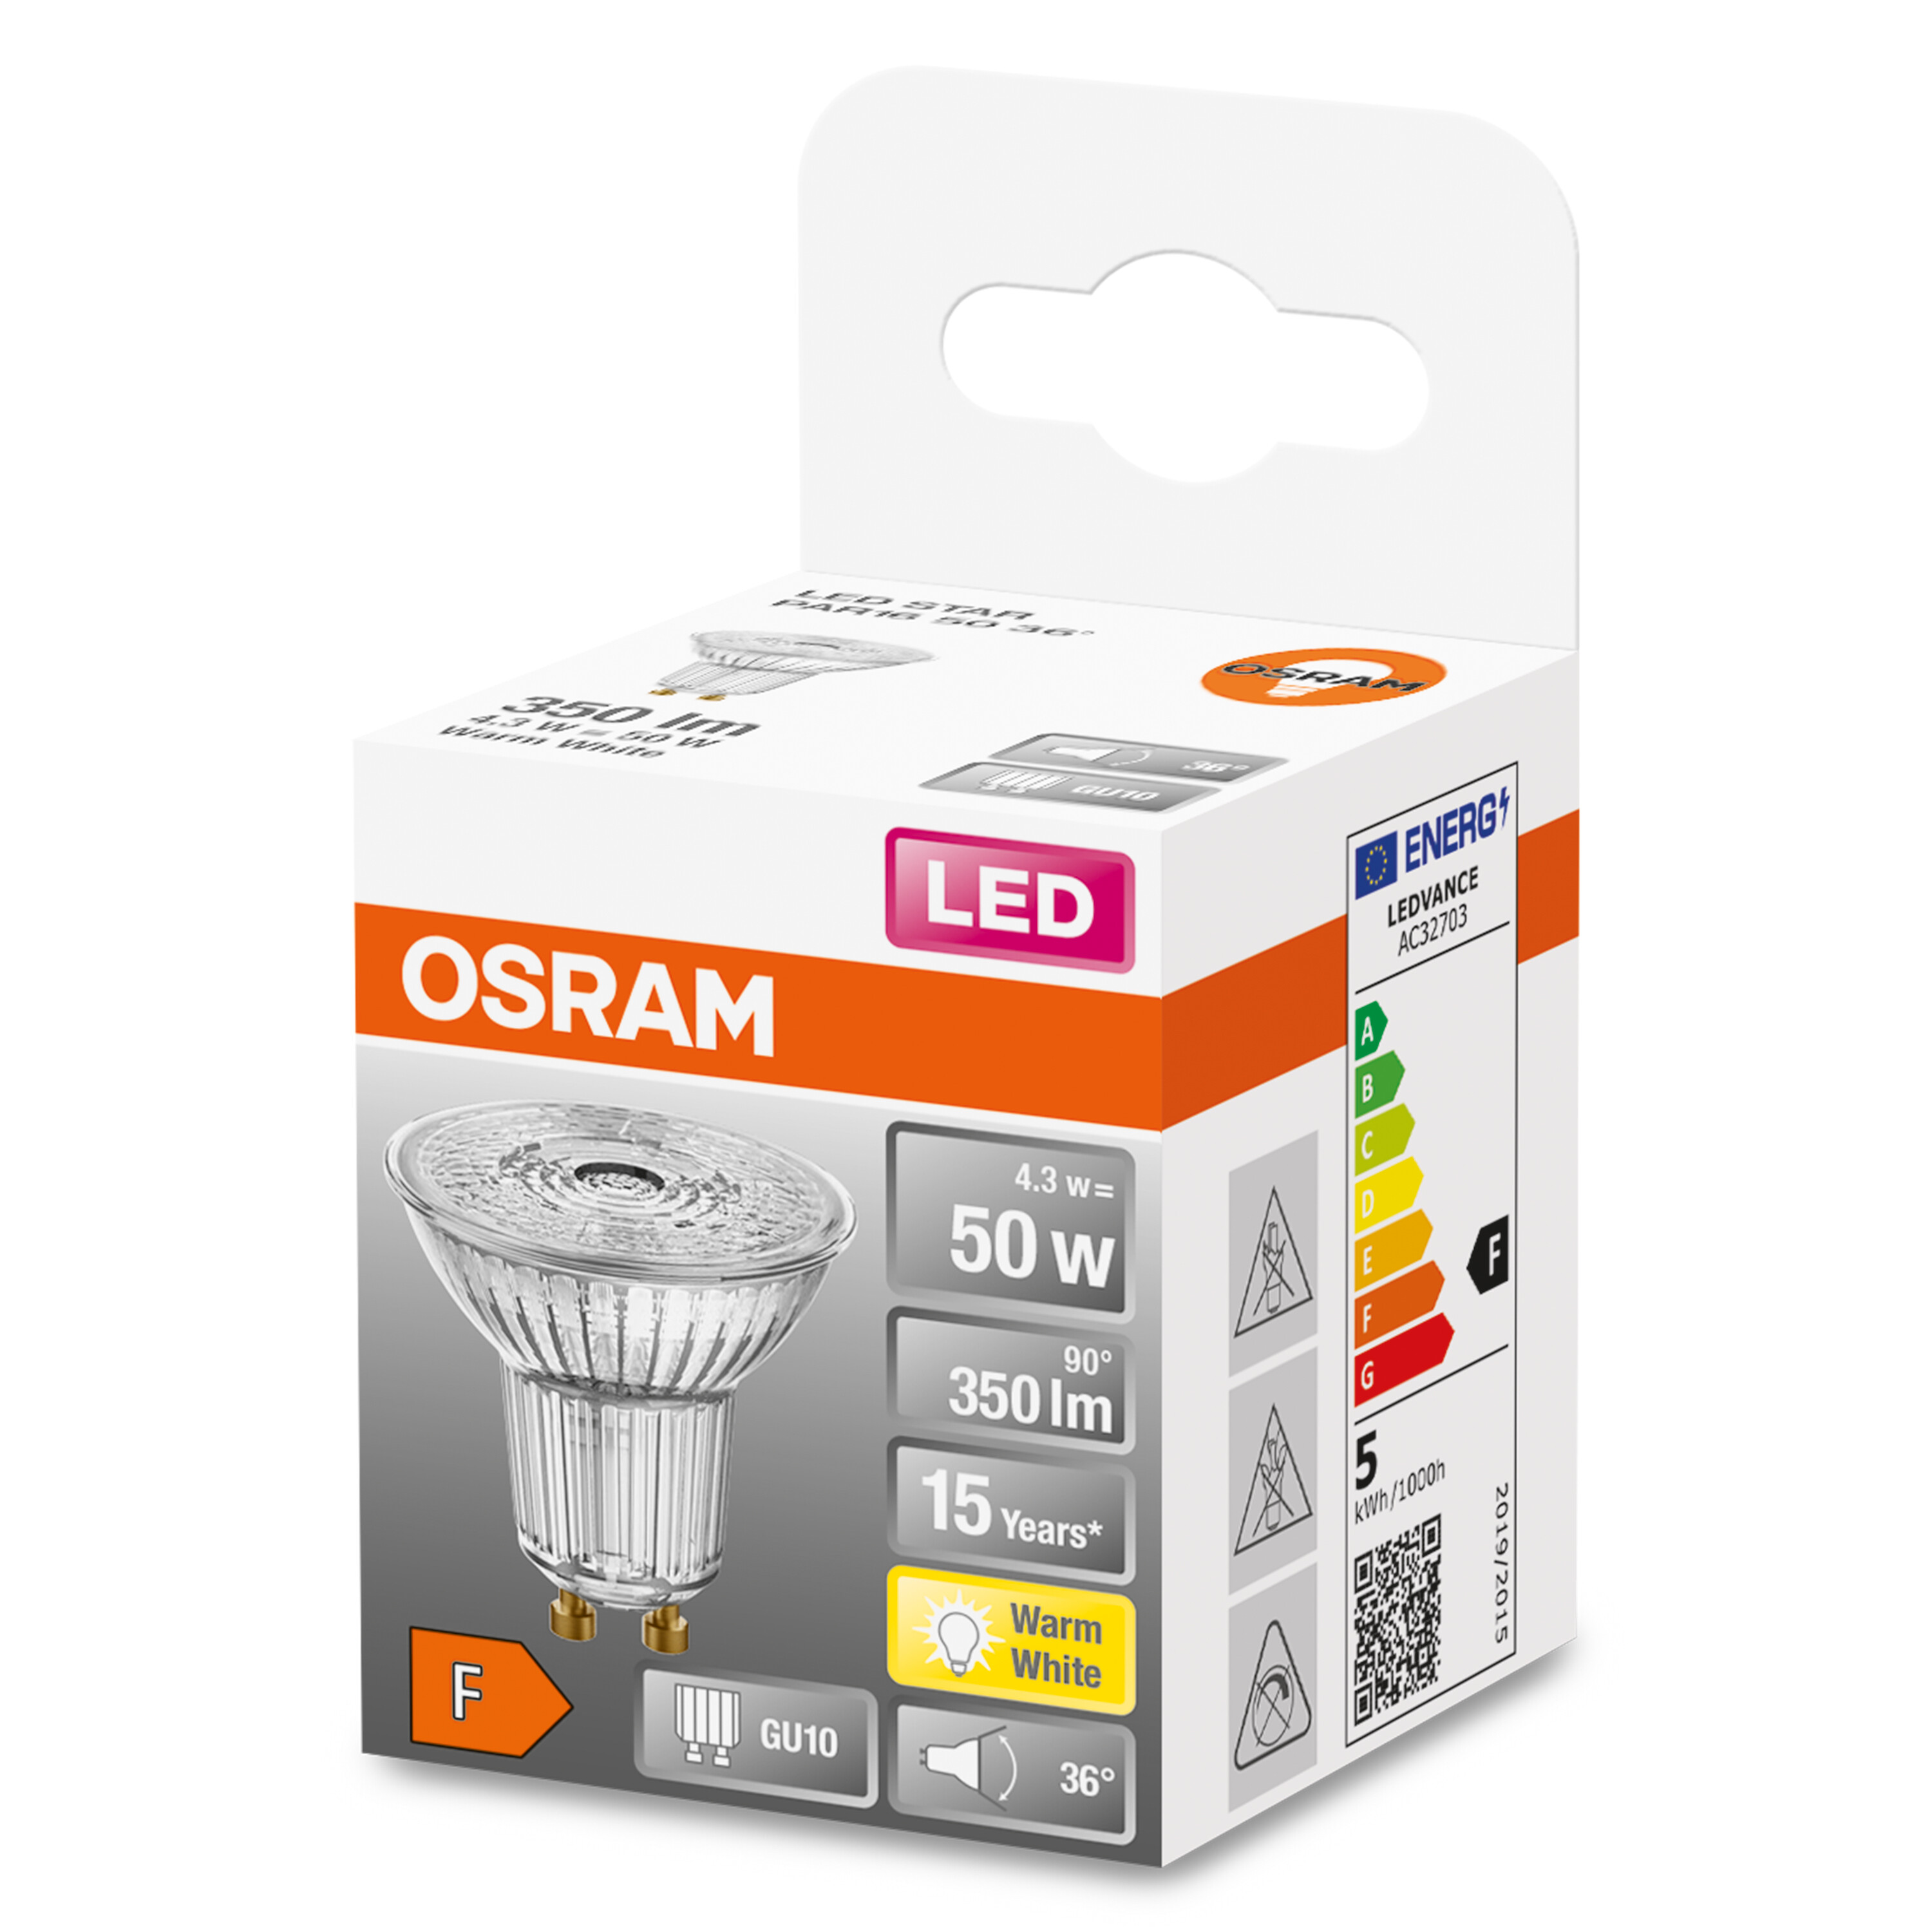 350 STAR 36° 350LM LED weiß GU10 LED-Lampe 4,3W/827 OSRAM  50 BOX Warm PAR16 Lumen